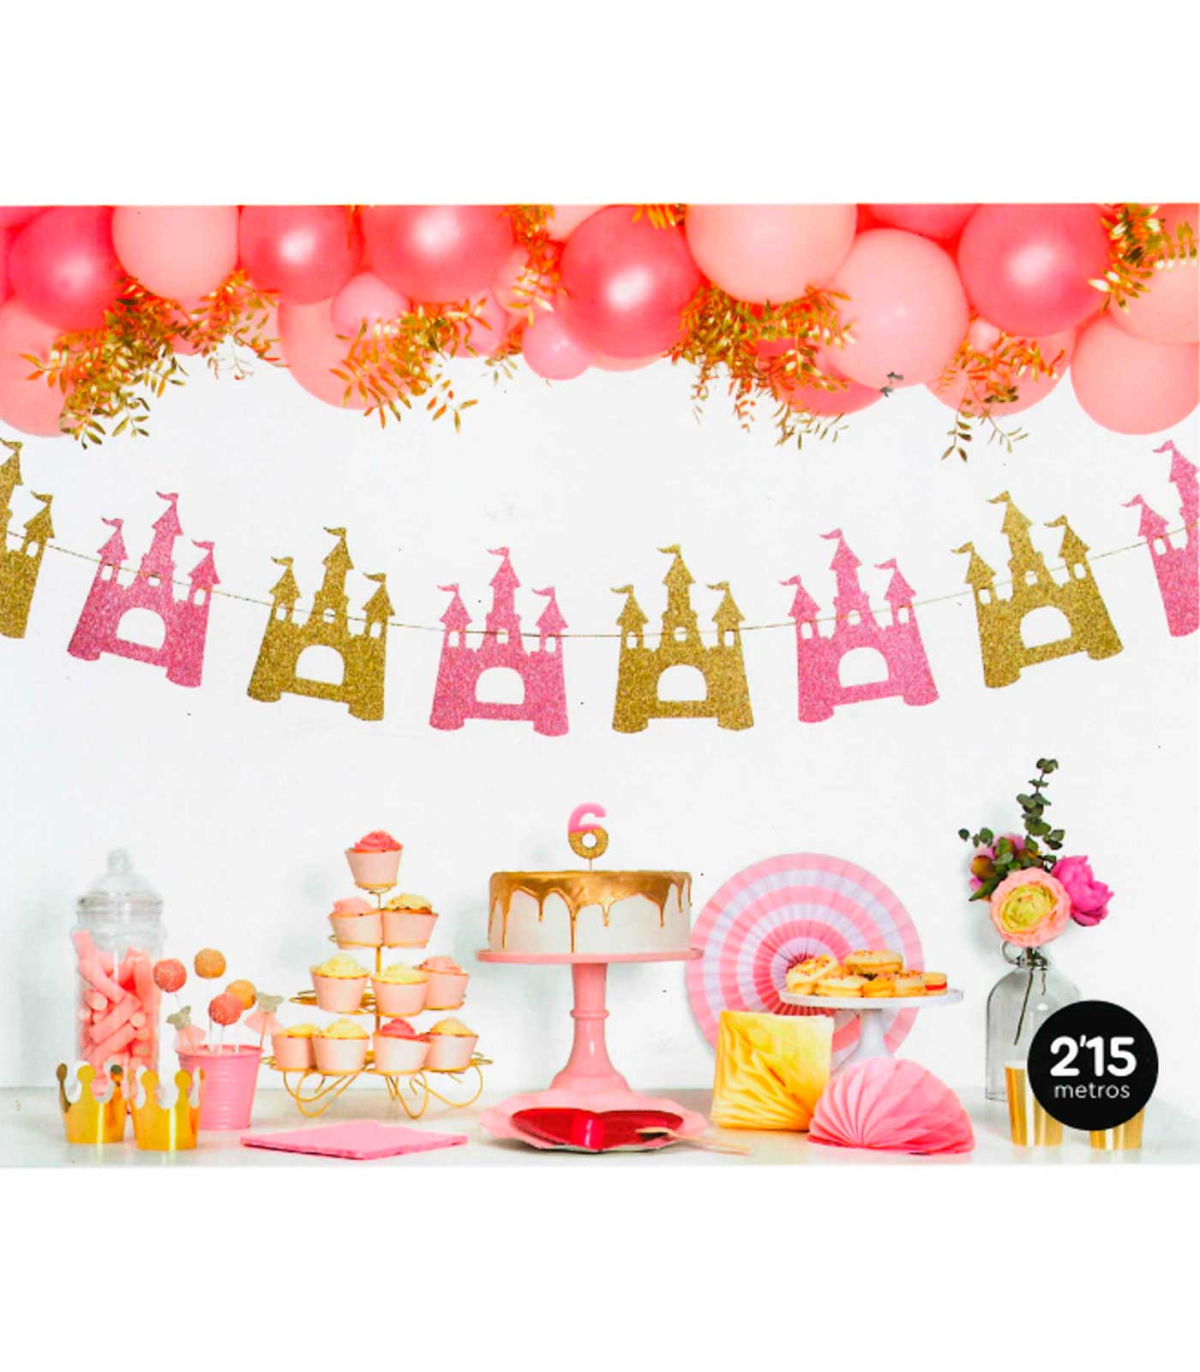 Tradineur - Set de decoración para cumpleaños, incluye guirnalda